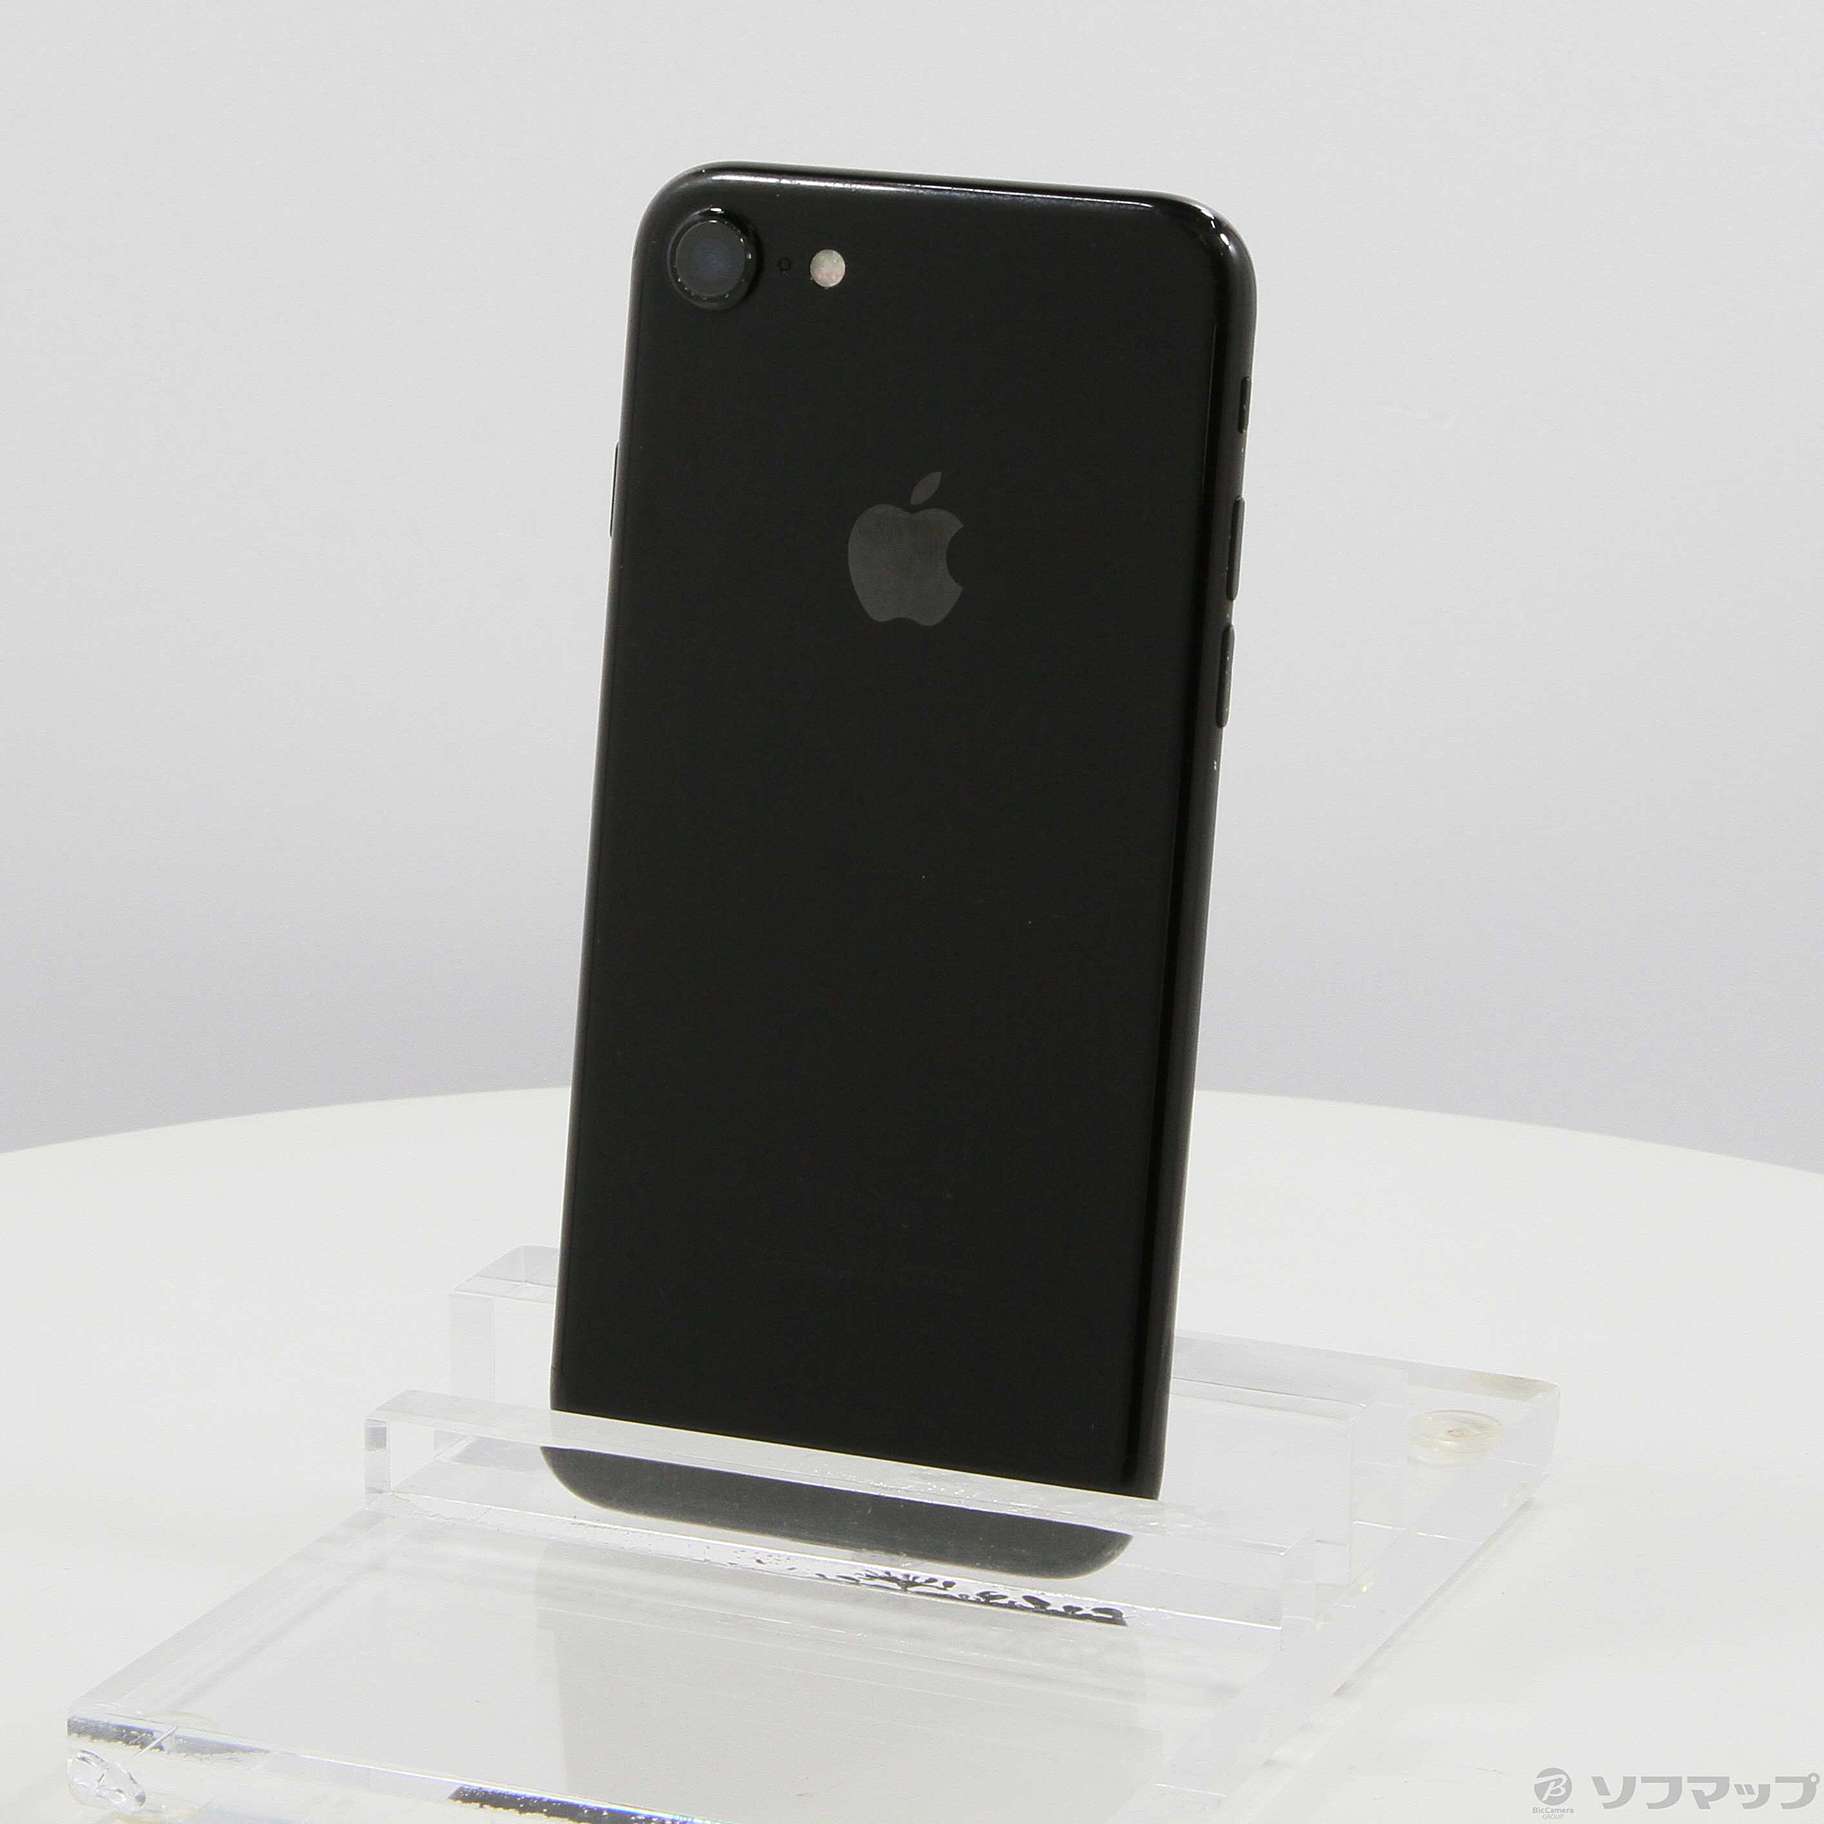 新品 iPhone7 128GB ジェットブラック SIMフリー www.krzysztofbialy.com